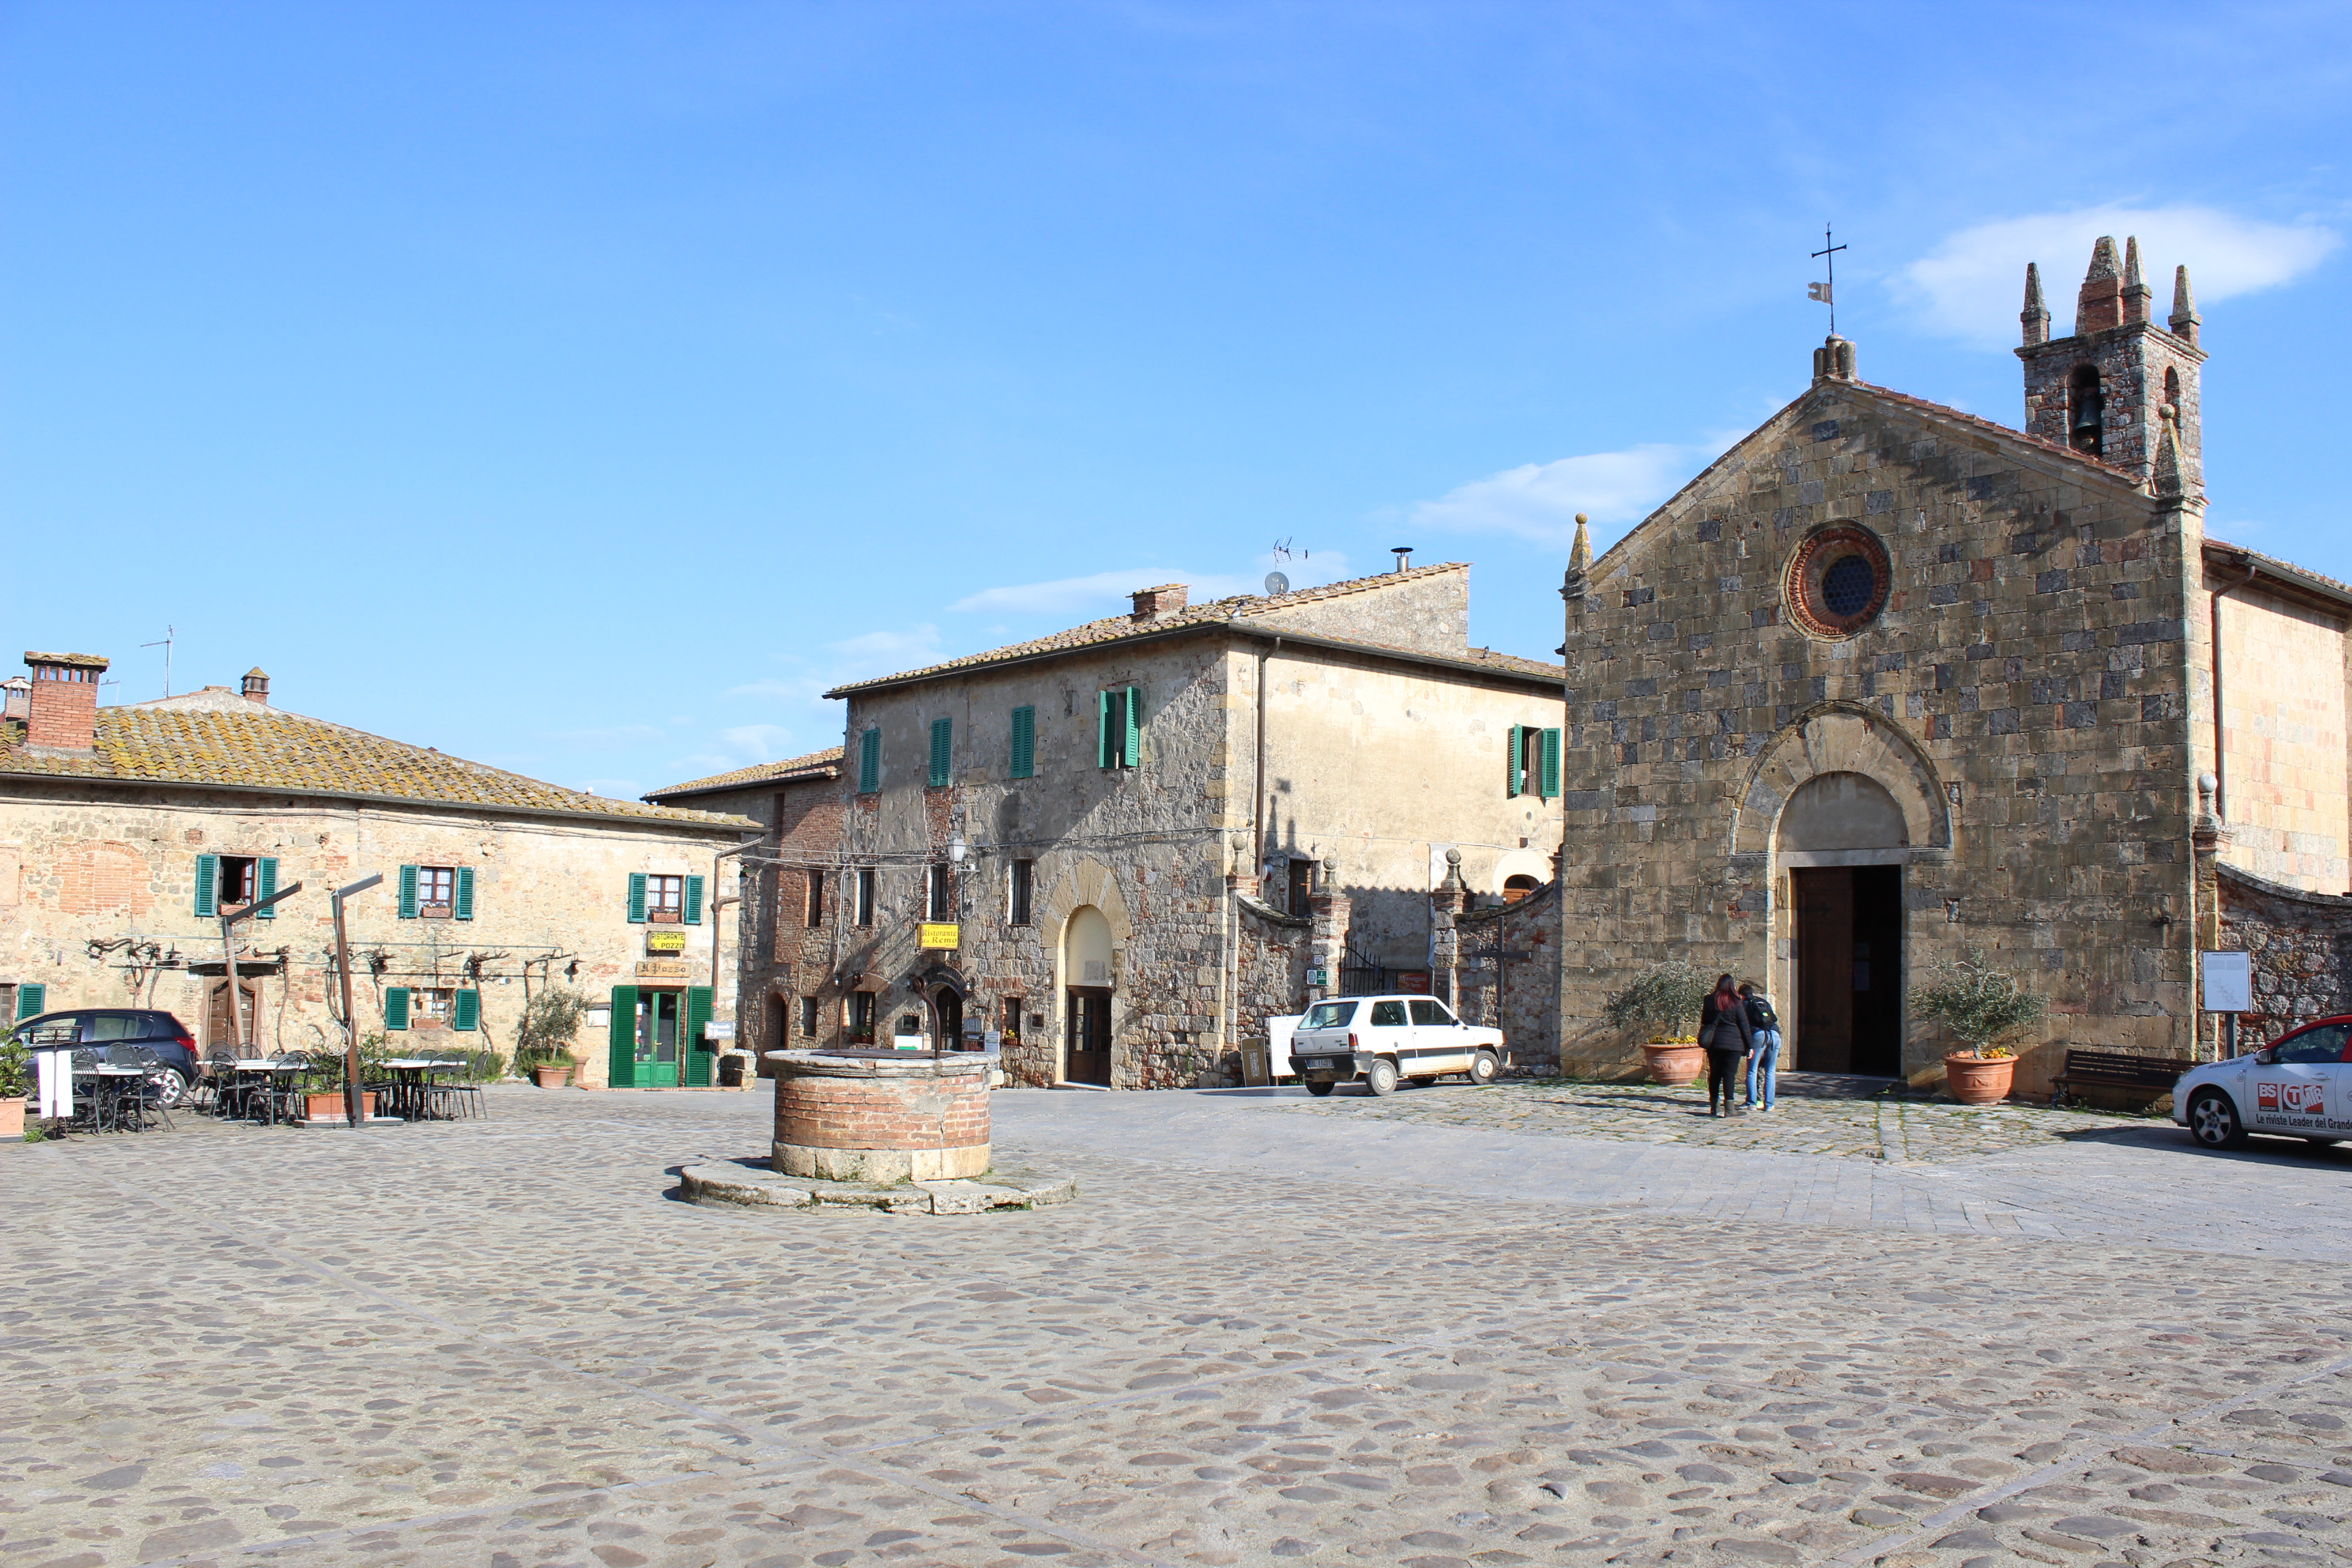 A church, a square and 2 cafés, that's Monteriggioni